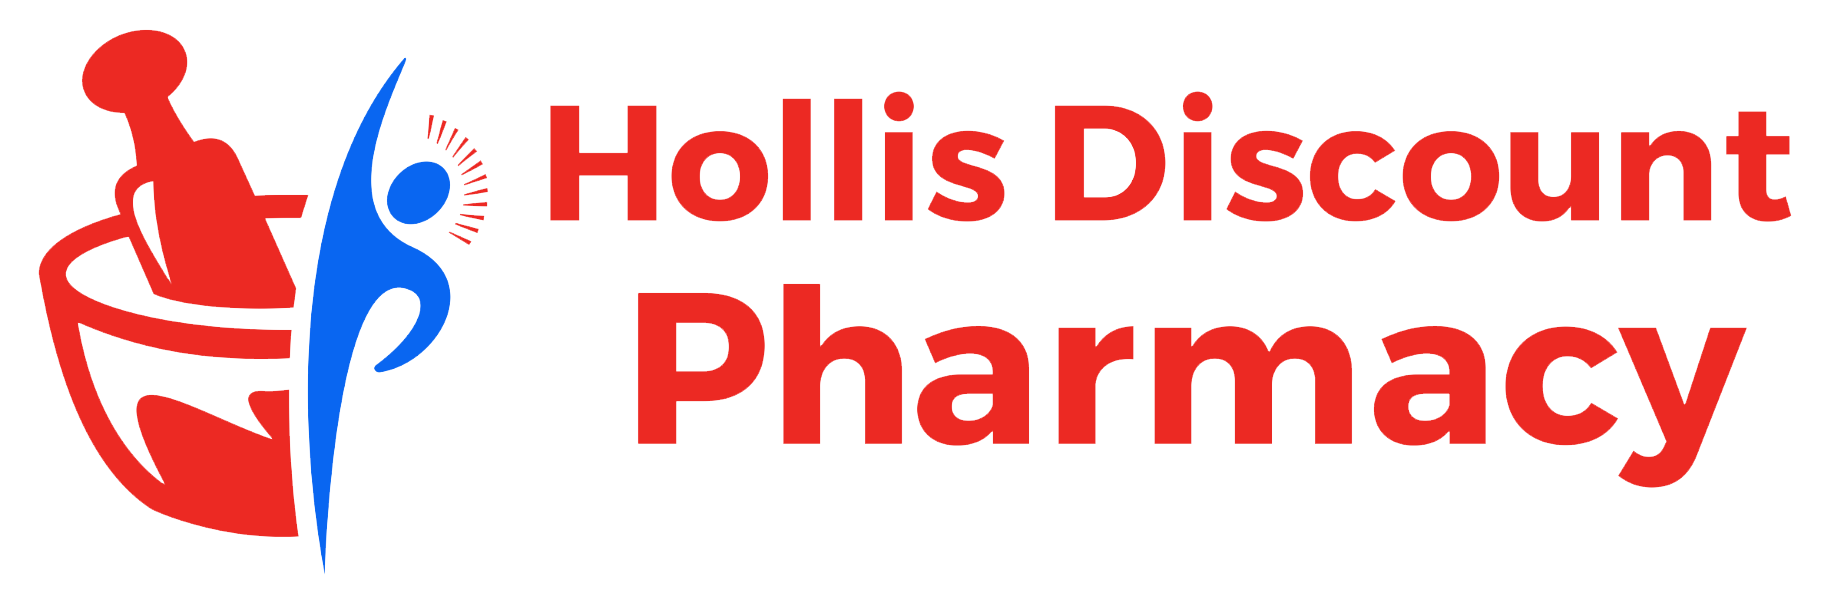 Hollis Discount Pharmacy